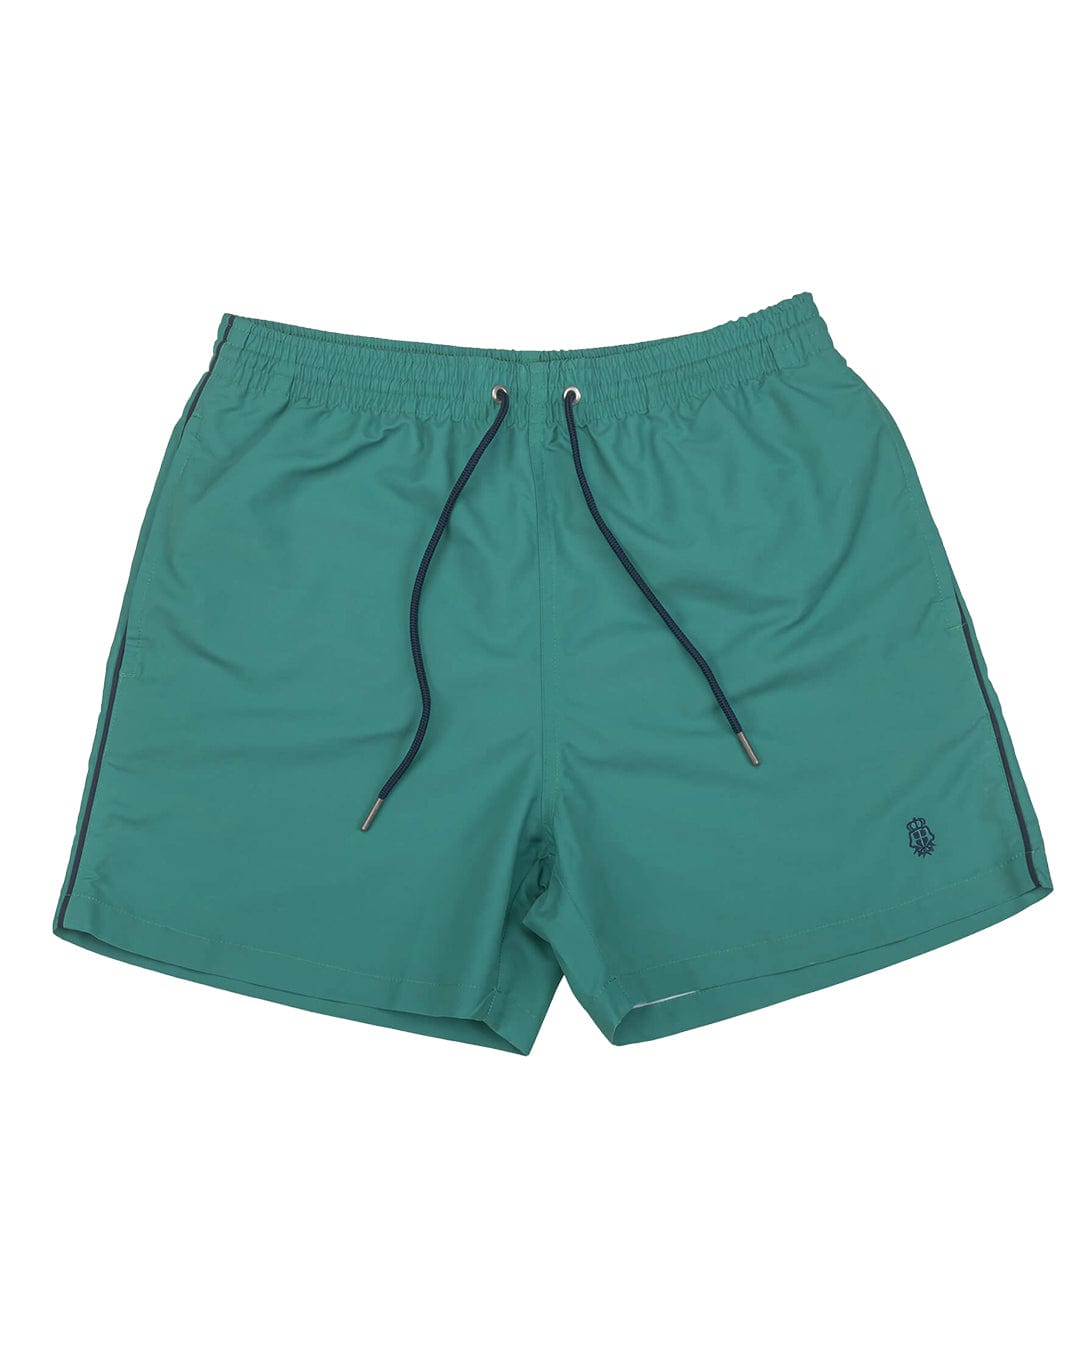 Gagliardi Swimwear Gagliardi Green Piped Swim Shorts